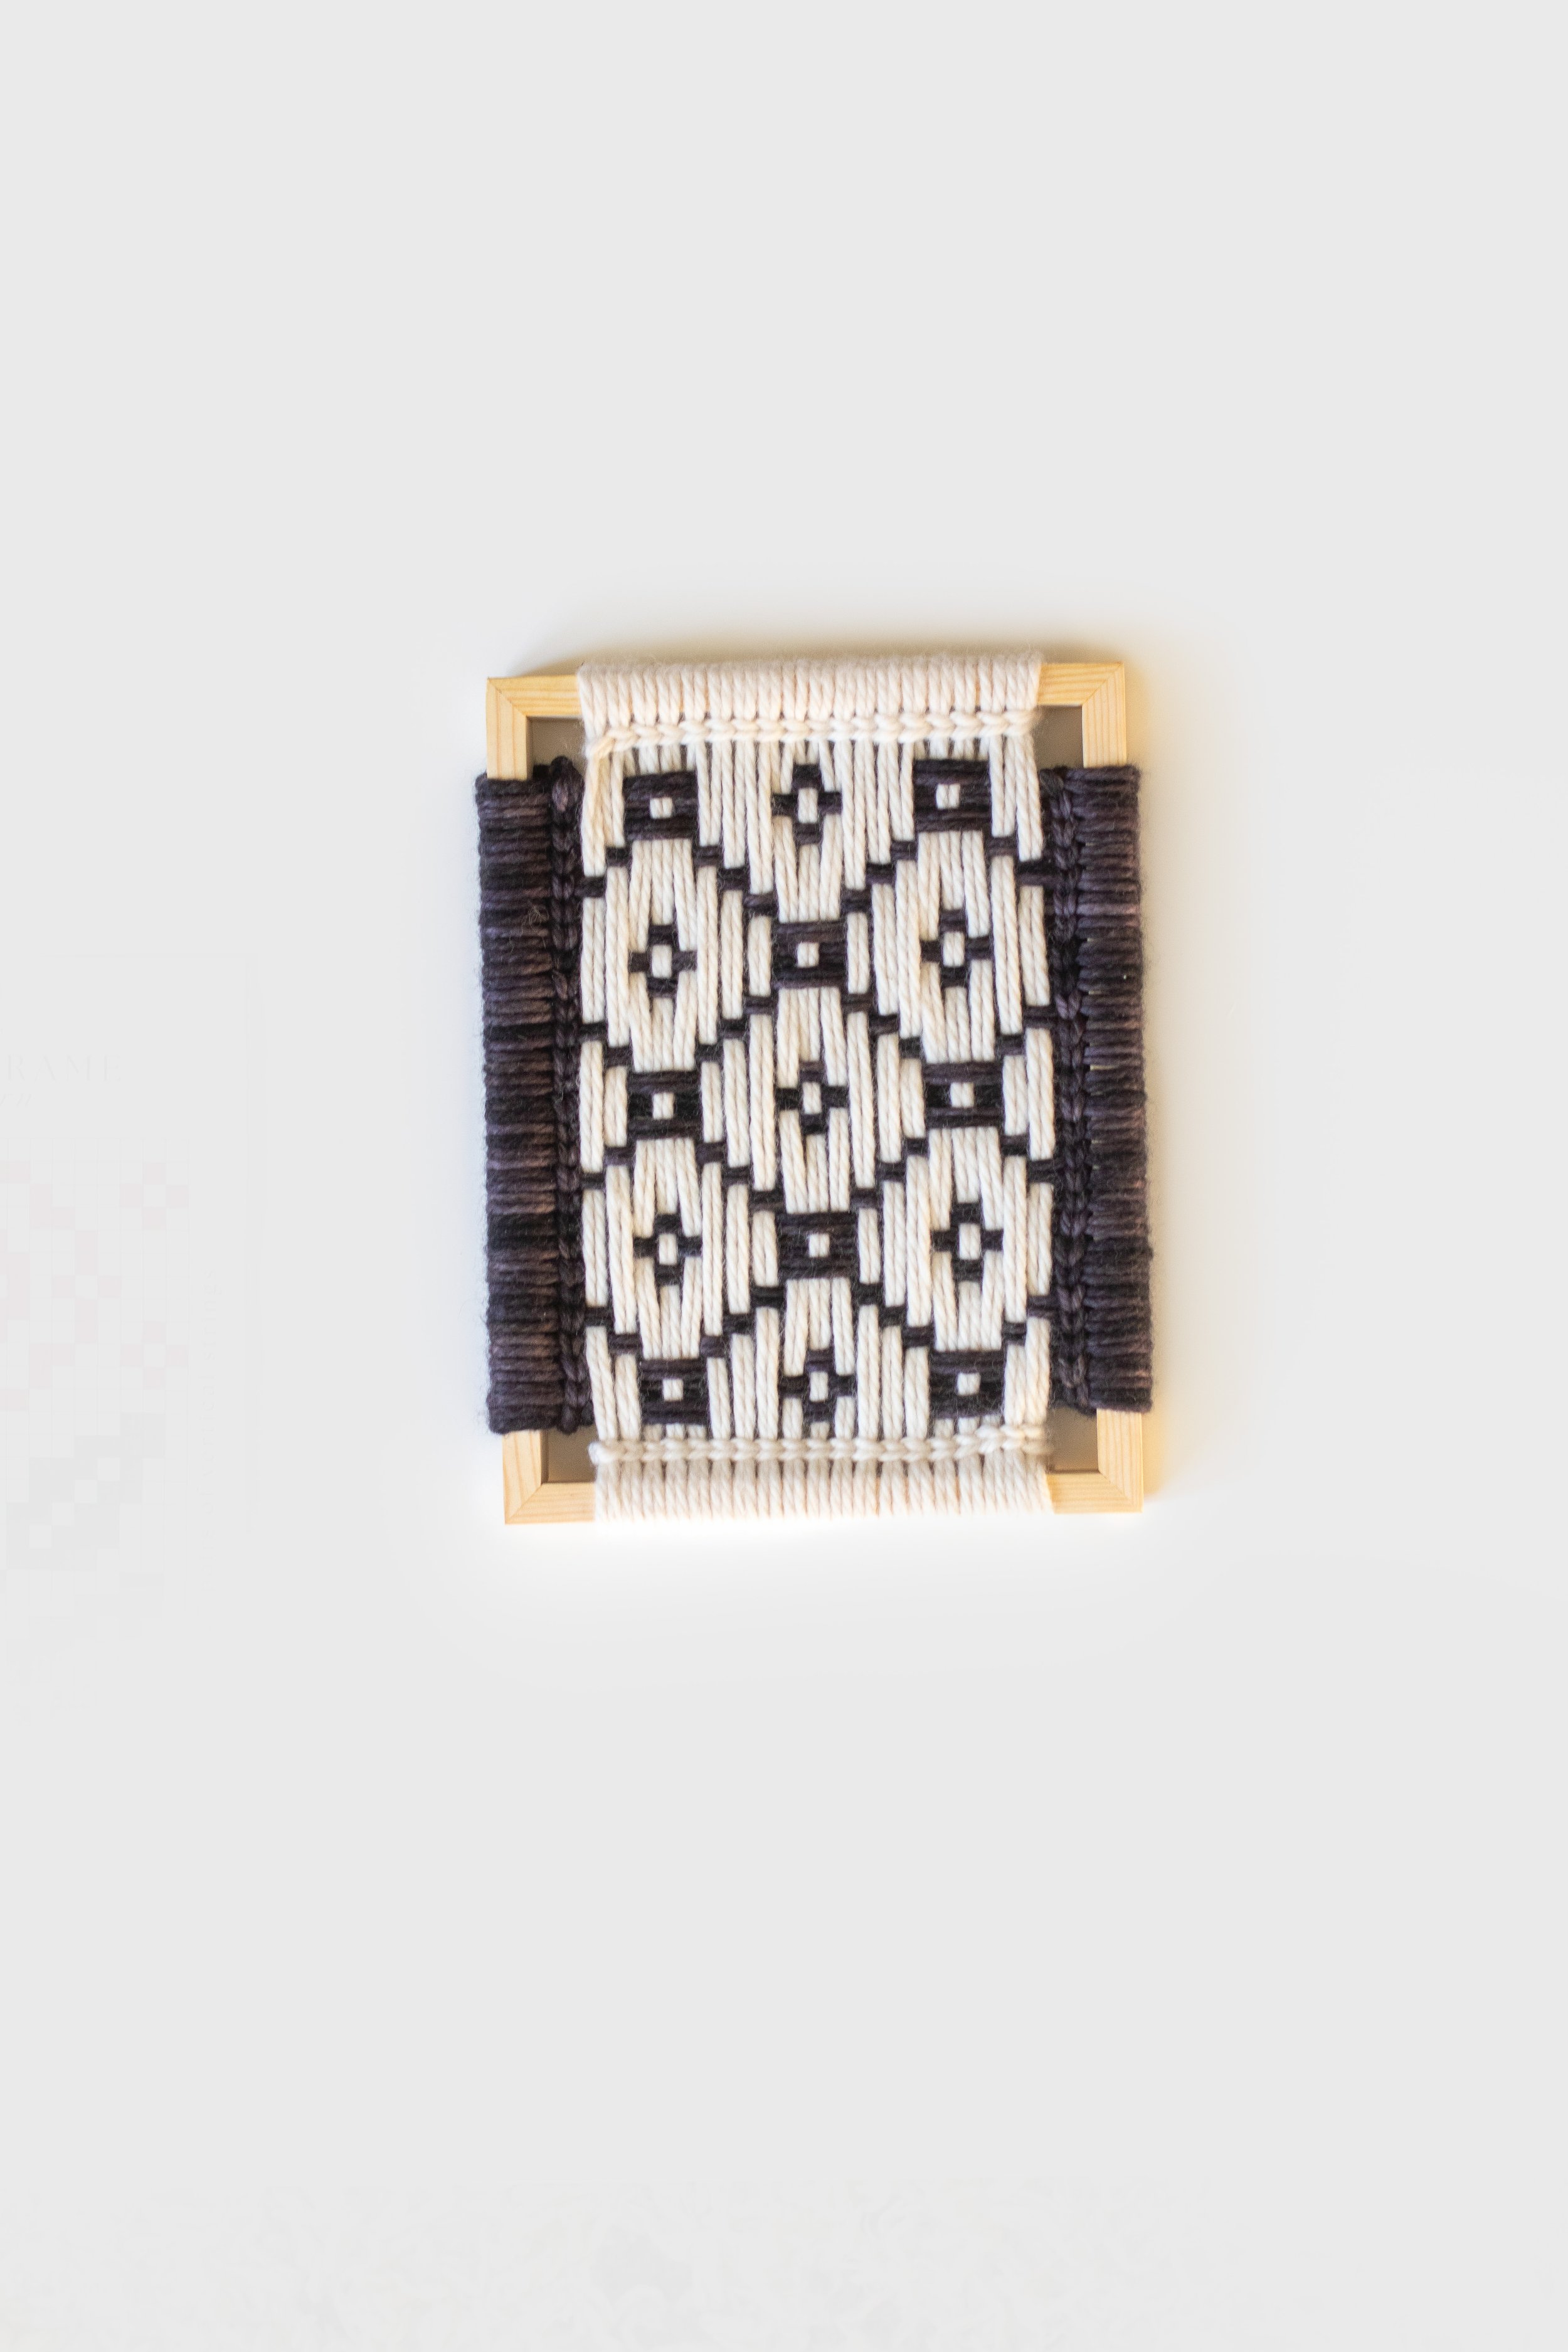 frame weaving-53.jpg